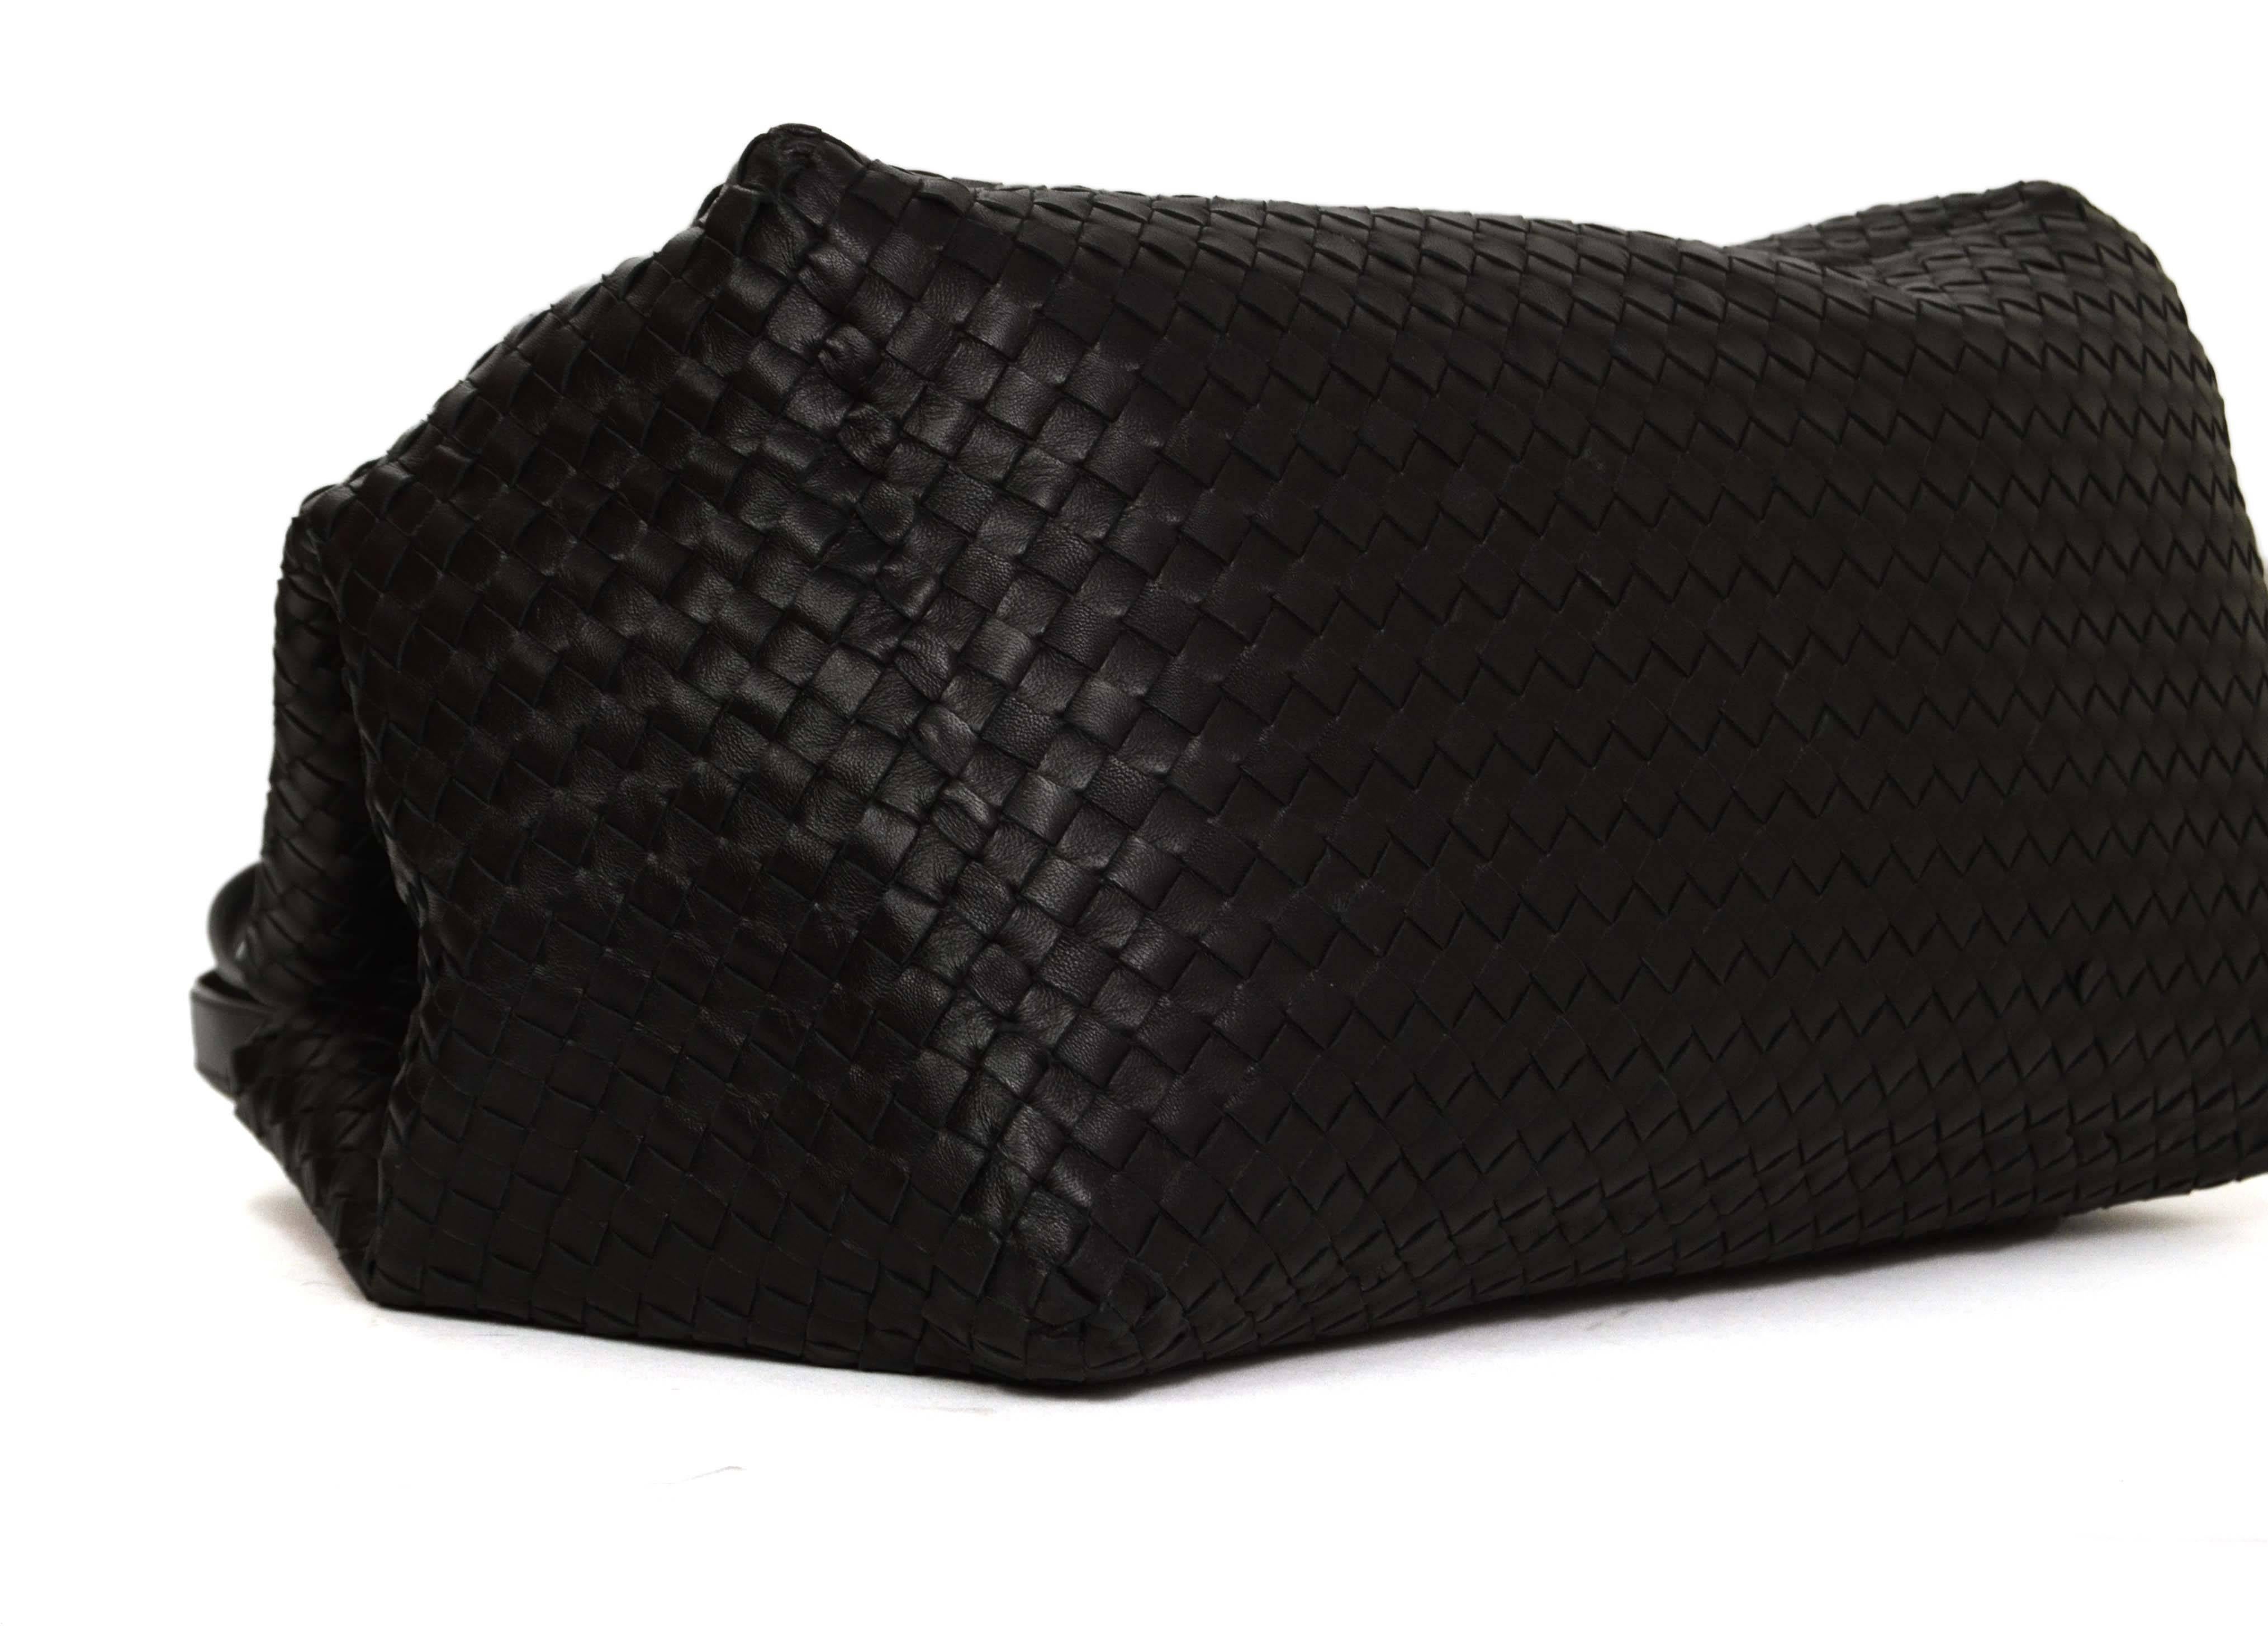 Women's Bottega Veneta Black Woven Leather Large Intrecciato Bag rt. $3, 950